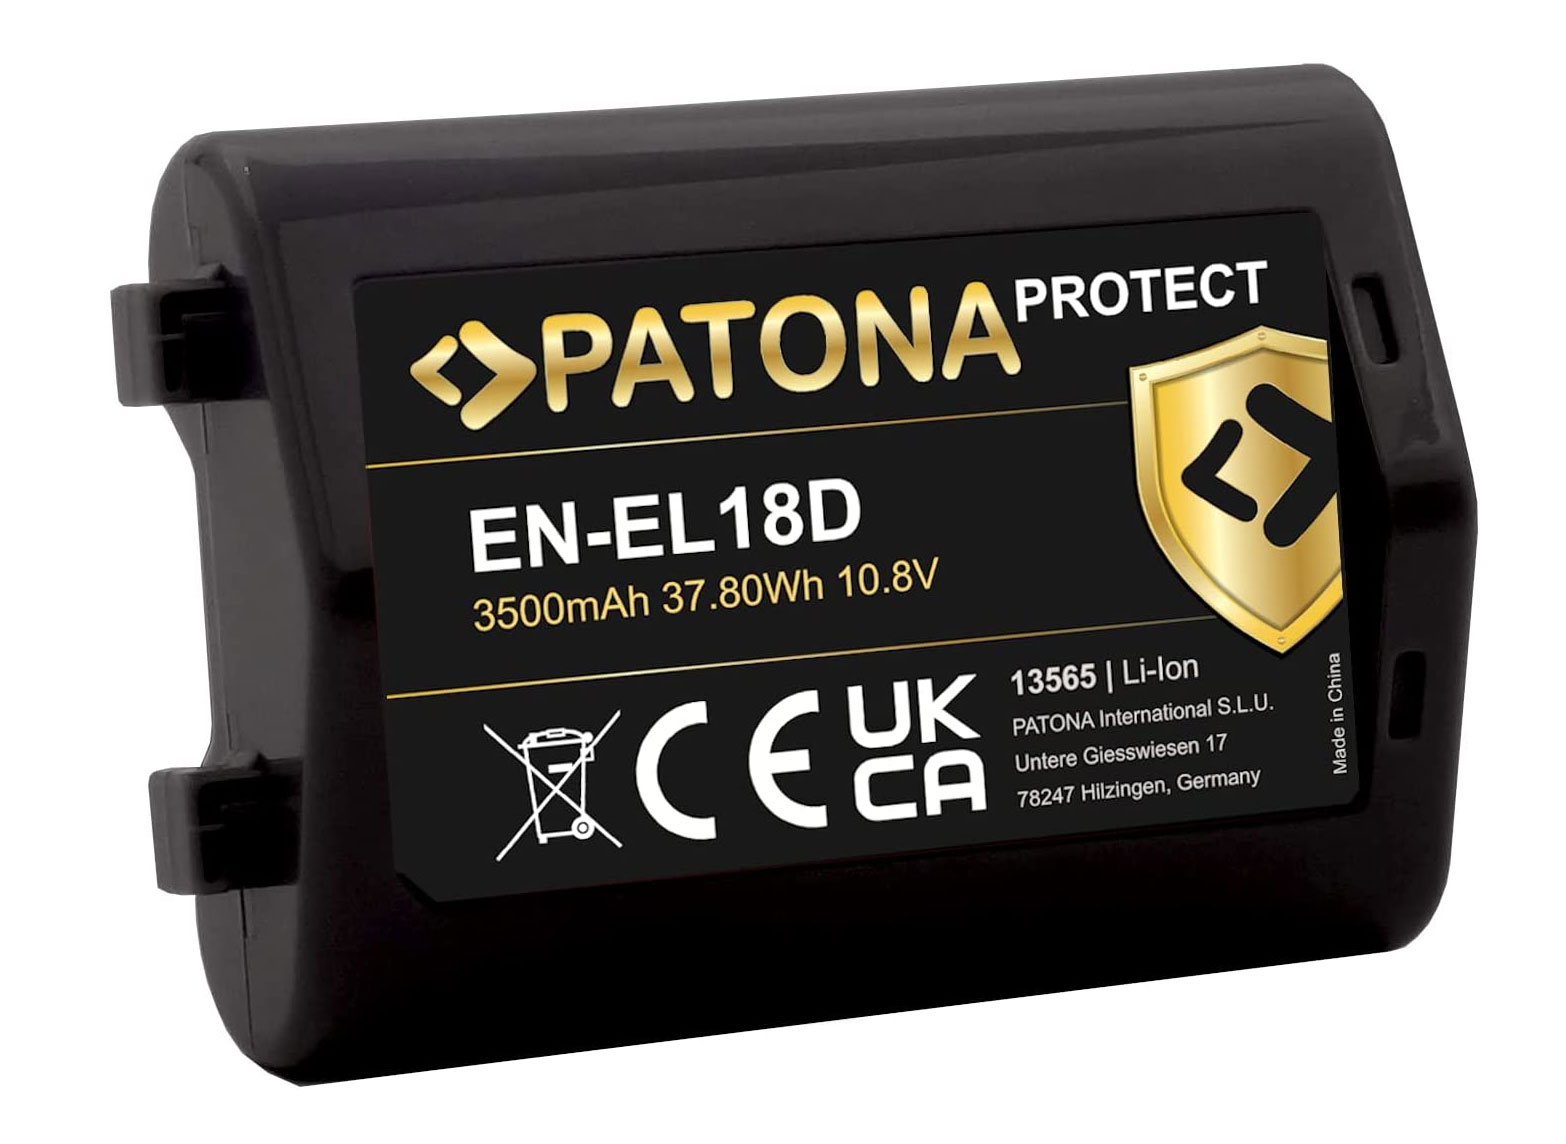 Patona Protect EN-EL18D